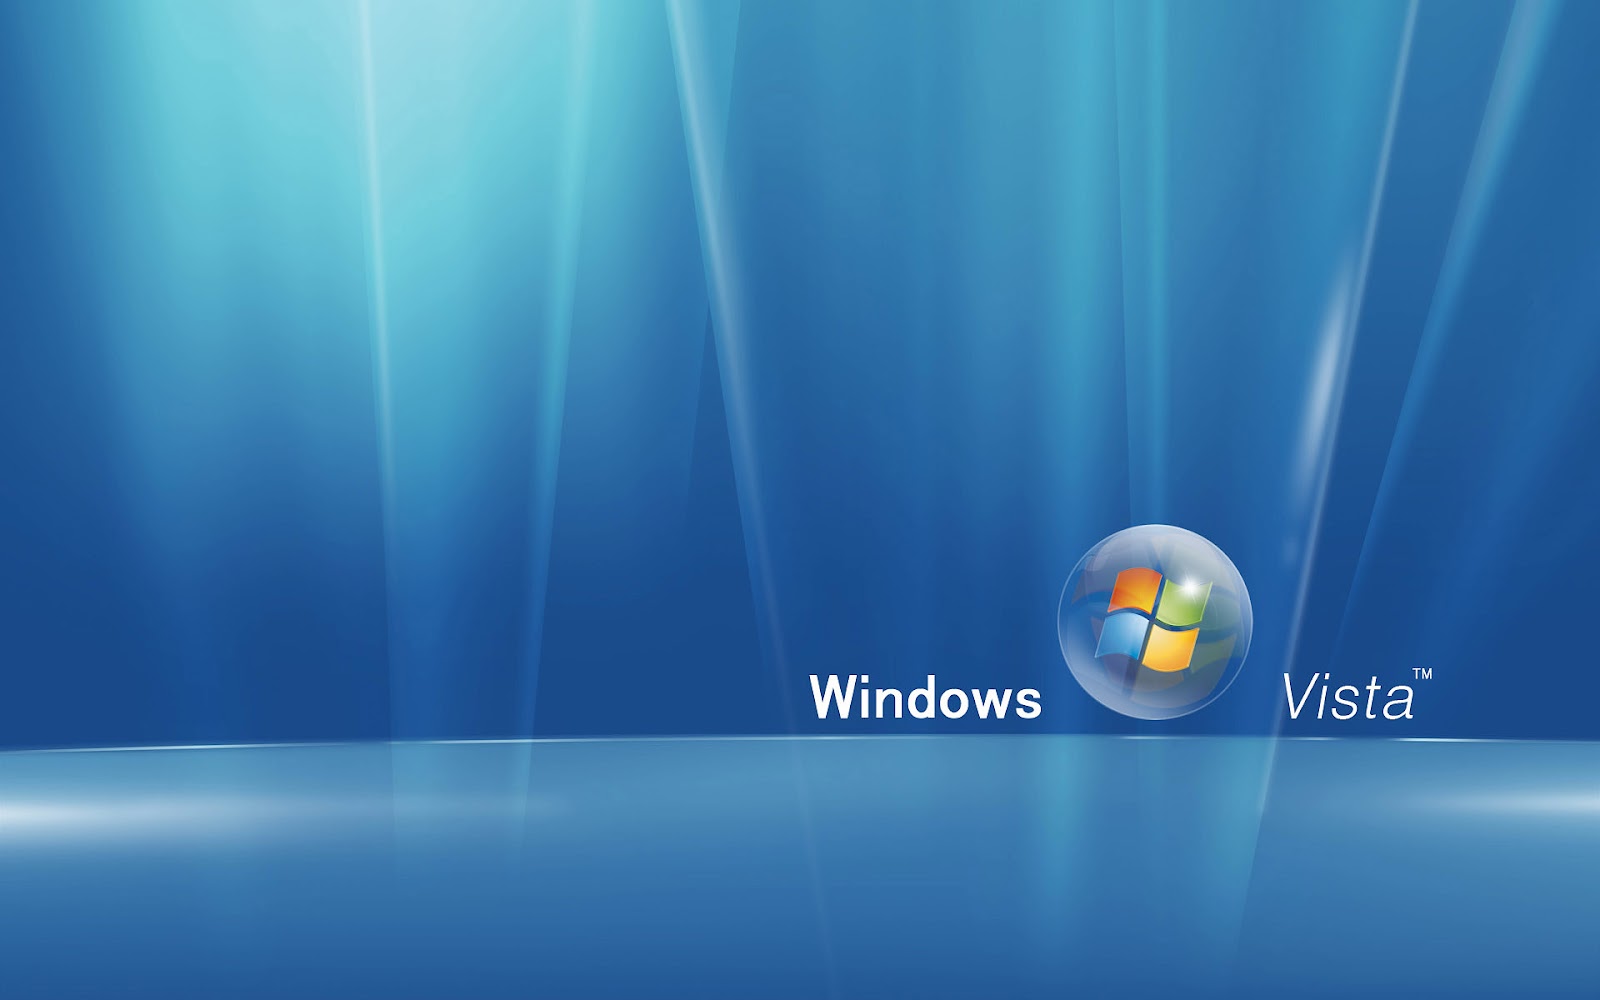 HD Windows Vista Achtergrond Blauwe Wallpaper Jpg